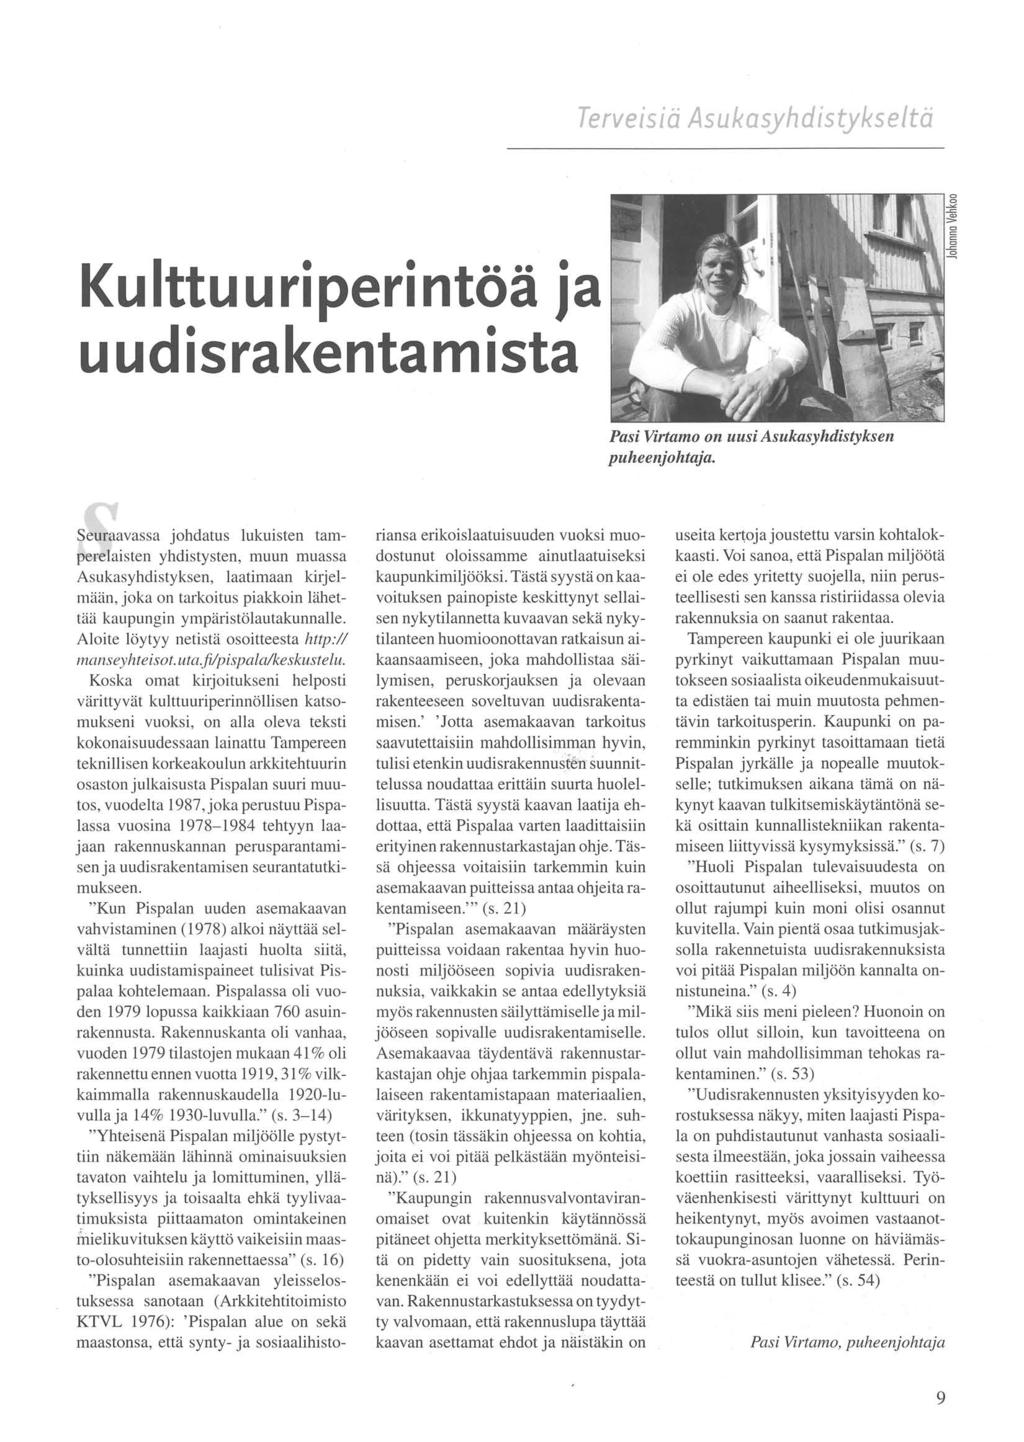 Terveisiä Asukasyhdistykse/tä Kulttuuriperintöä ja uudisrakentamista Pasi Virtamo on uusi Asukasyhdistyksen puheenjohtaja.